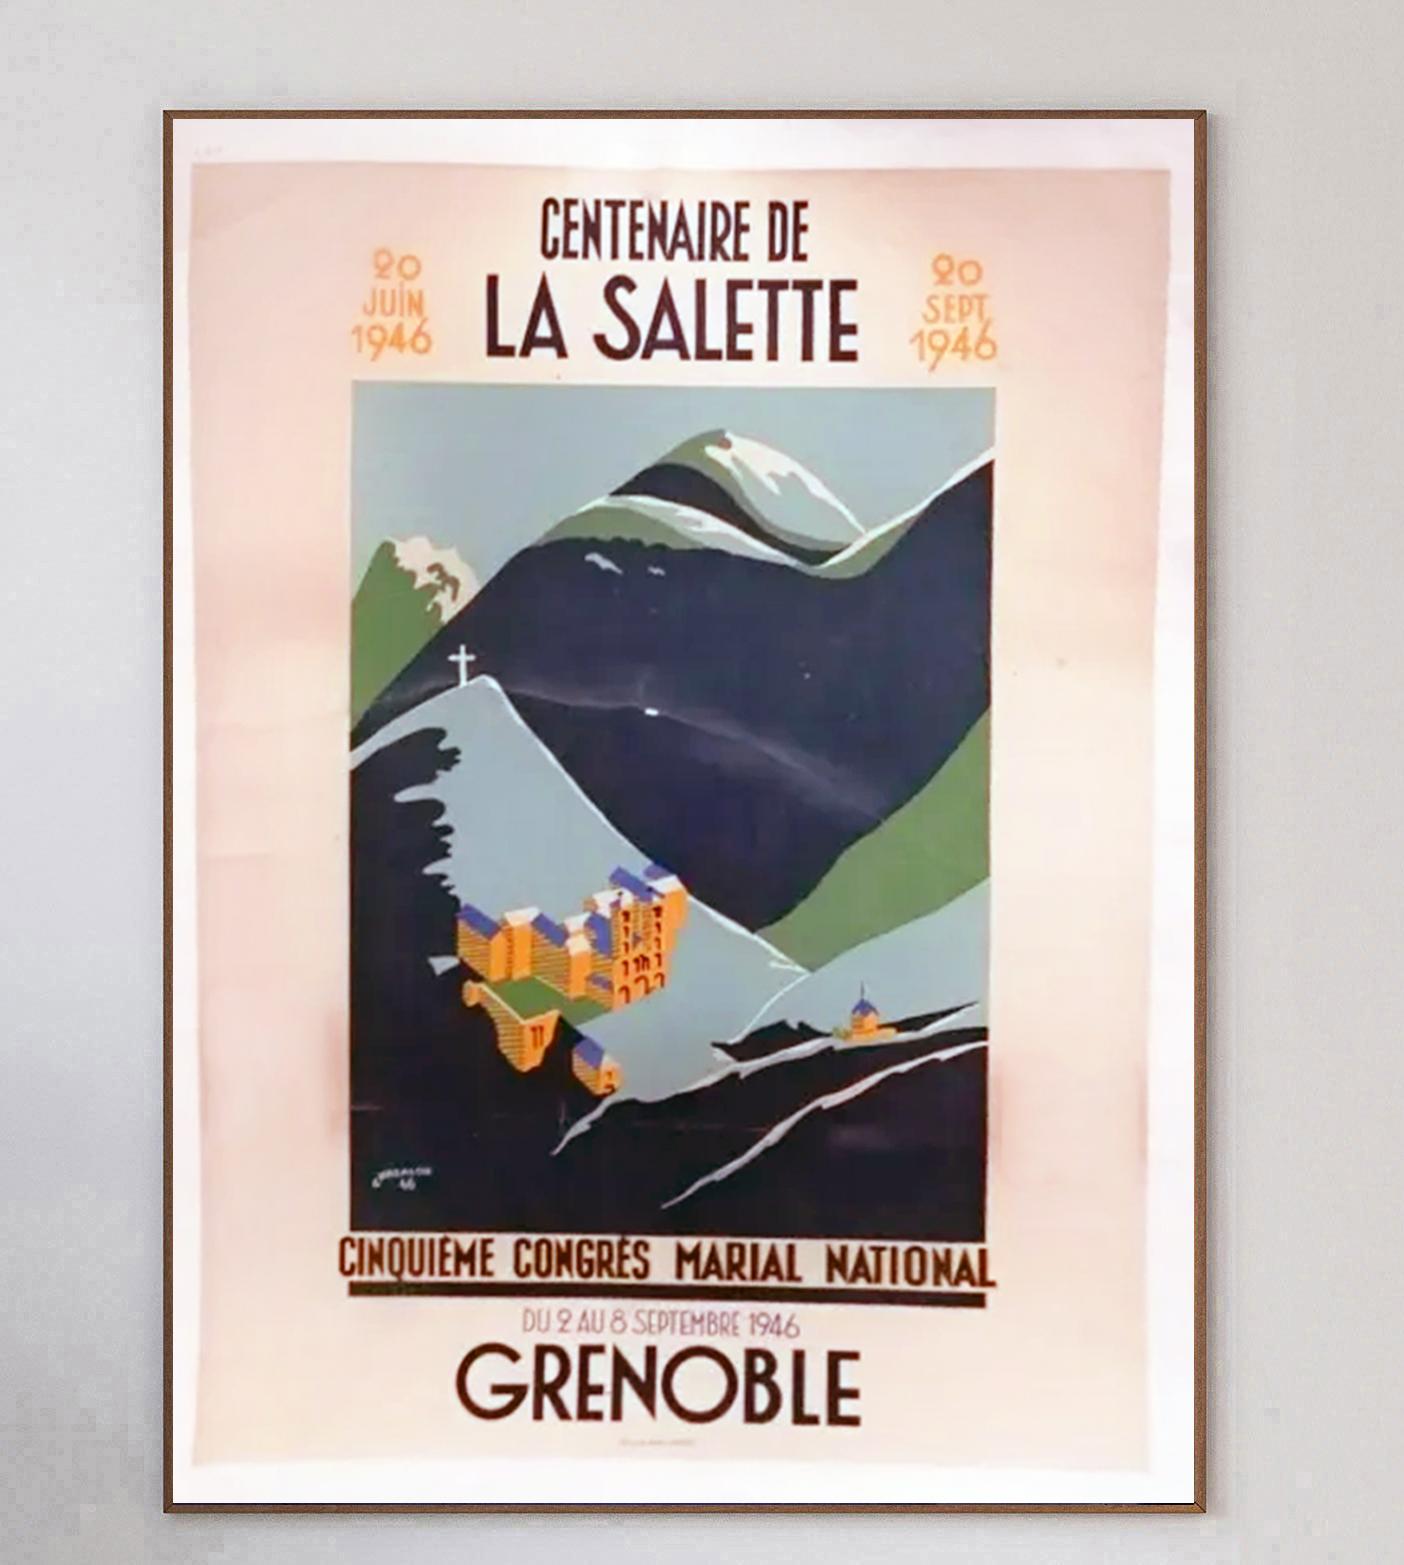 Superbe affiche de 1946 créée pour célébrer le Centenaire de La Salette ou Centenaire de Notre Dame de La Salette à Grenoble. L'apparition mariale a été rapportée par deux jeunes enfants en 1846. 

La belle ville de Grenoble se trouve dans la région